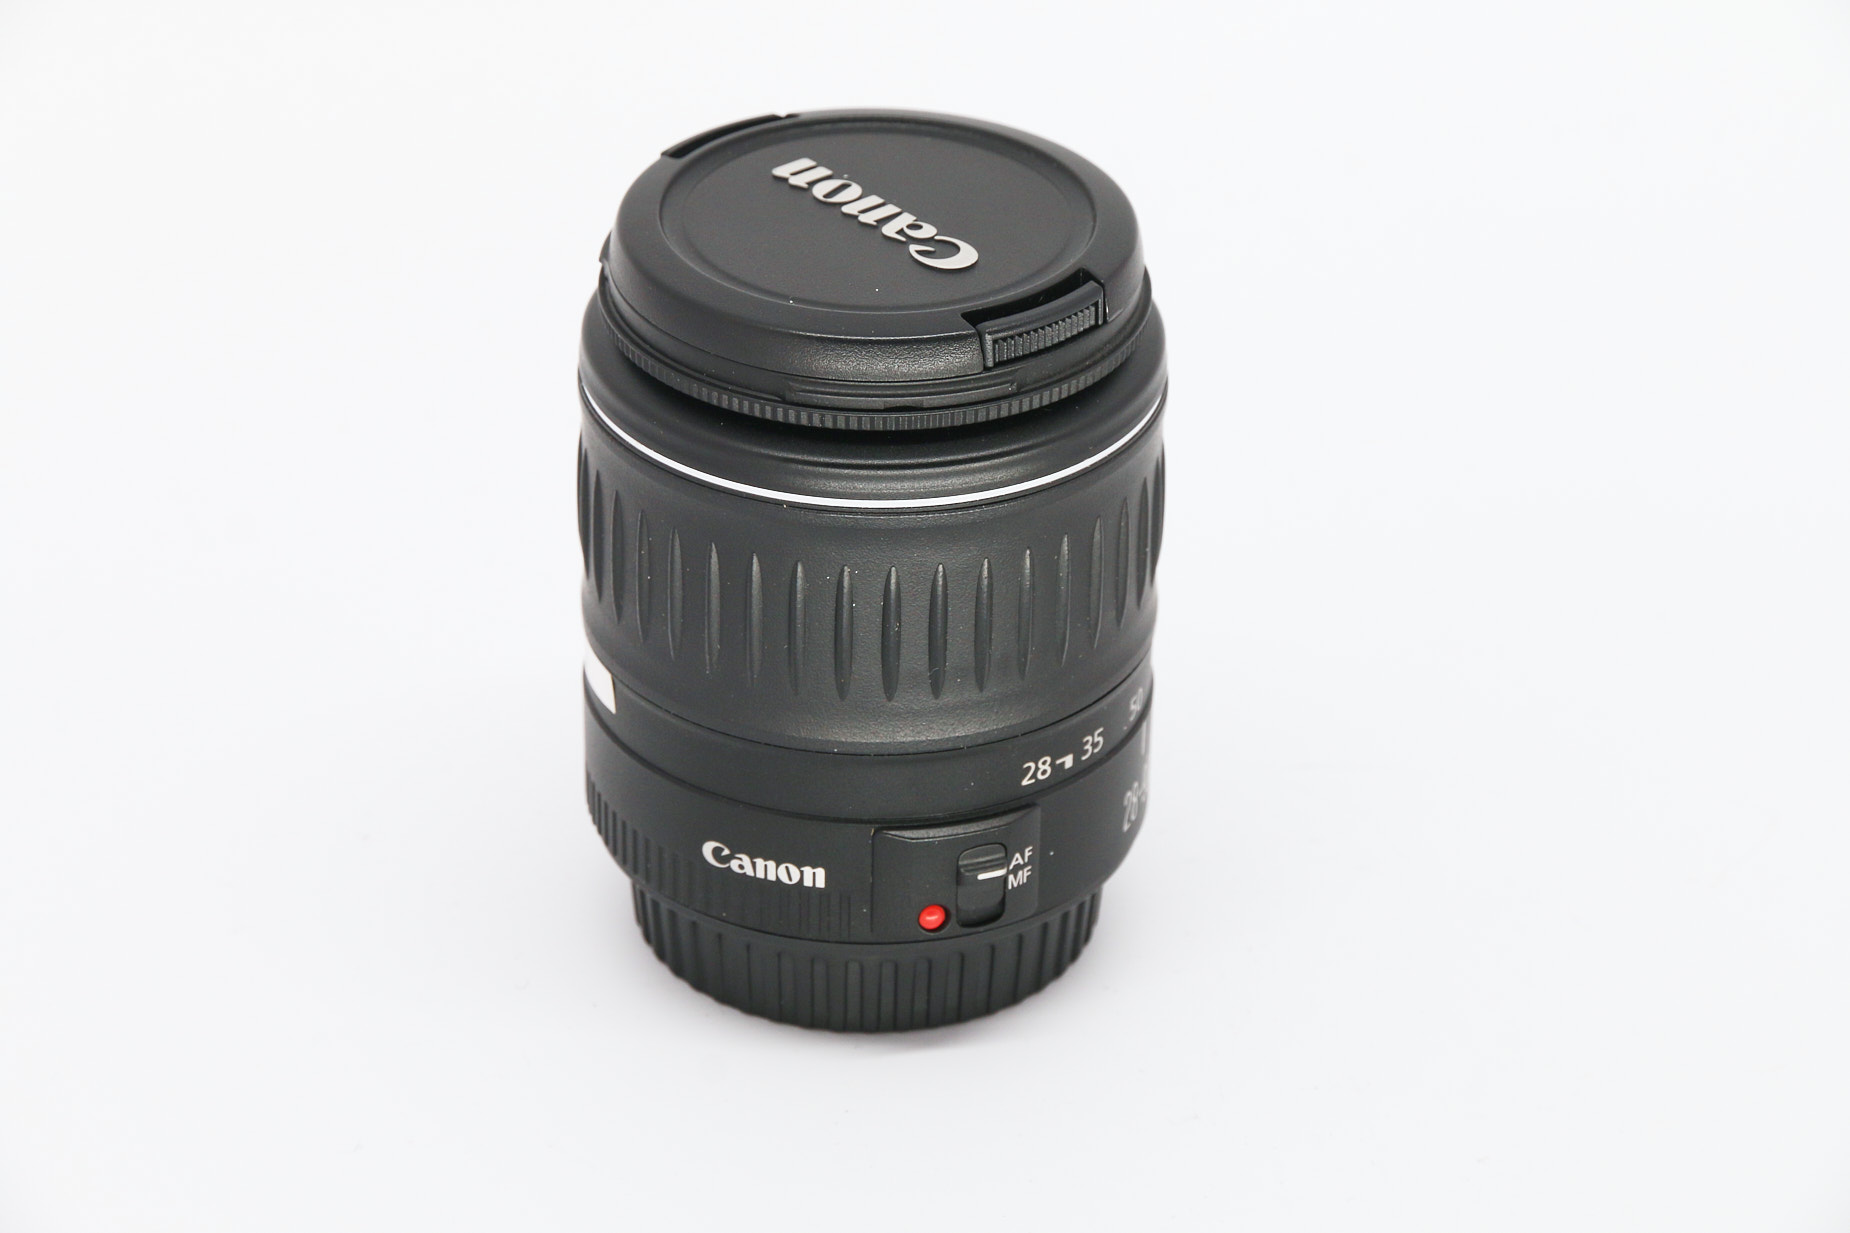 Canon EF 28-90mm gebraucht Bild 03